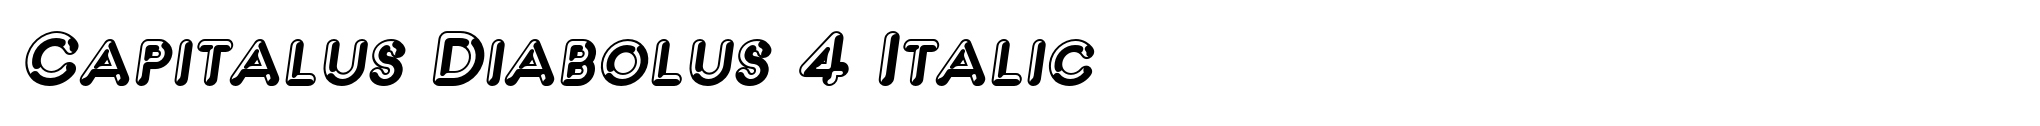 Capitalus Diabolus 4 Italic image